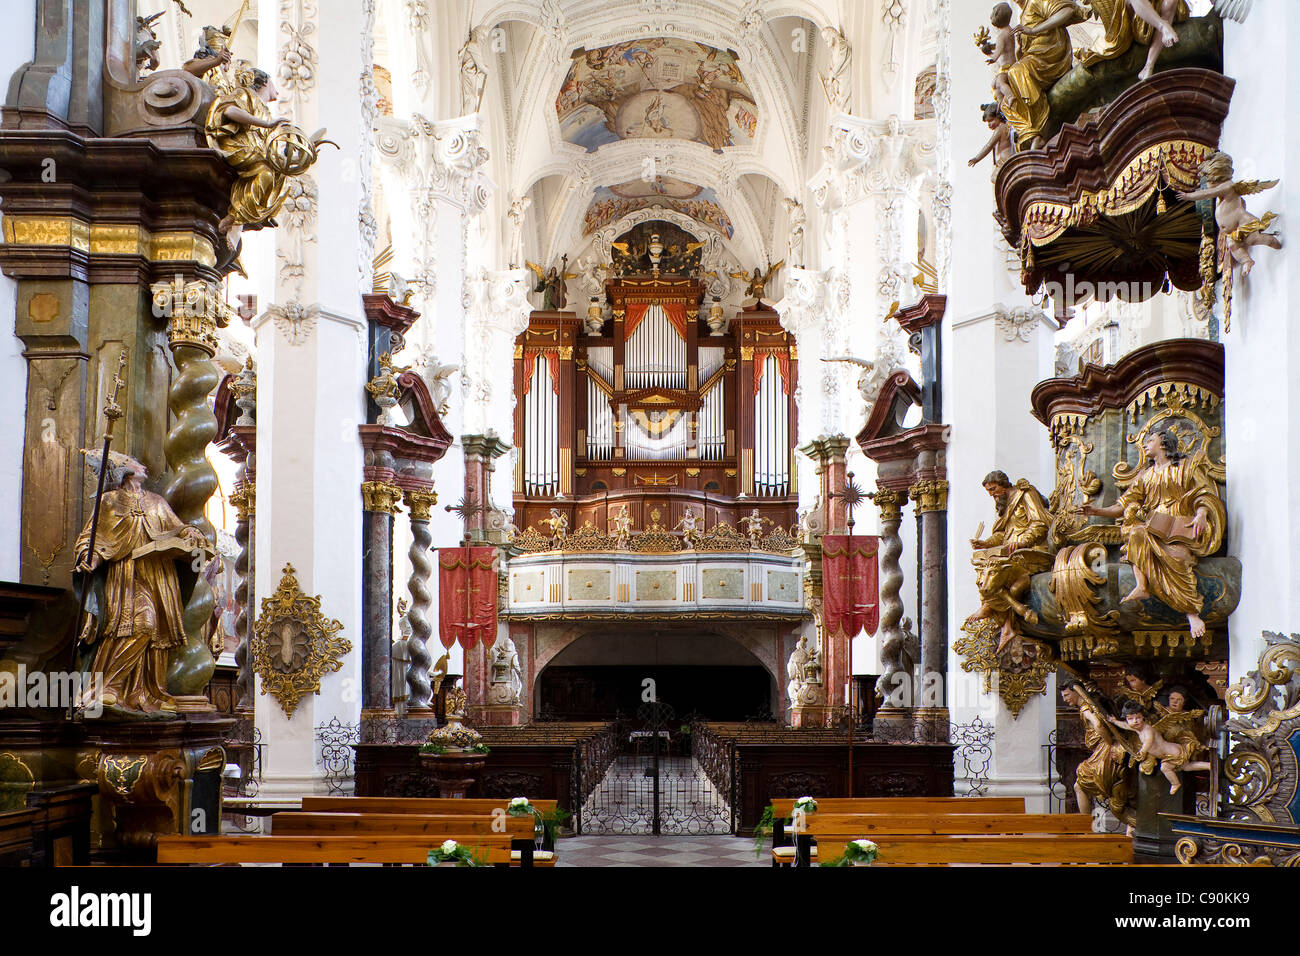 Orgel in Neuzelle Kloster, Zisterzienser-Kloster in der Nähe von München, Niederlausitz, Brandenburg, Deutschland, Europa Stockfoto